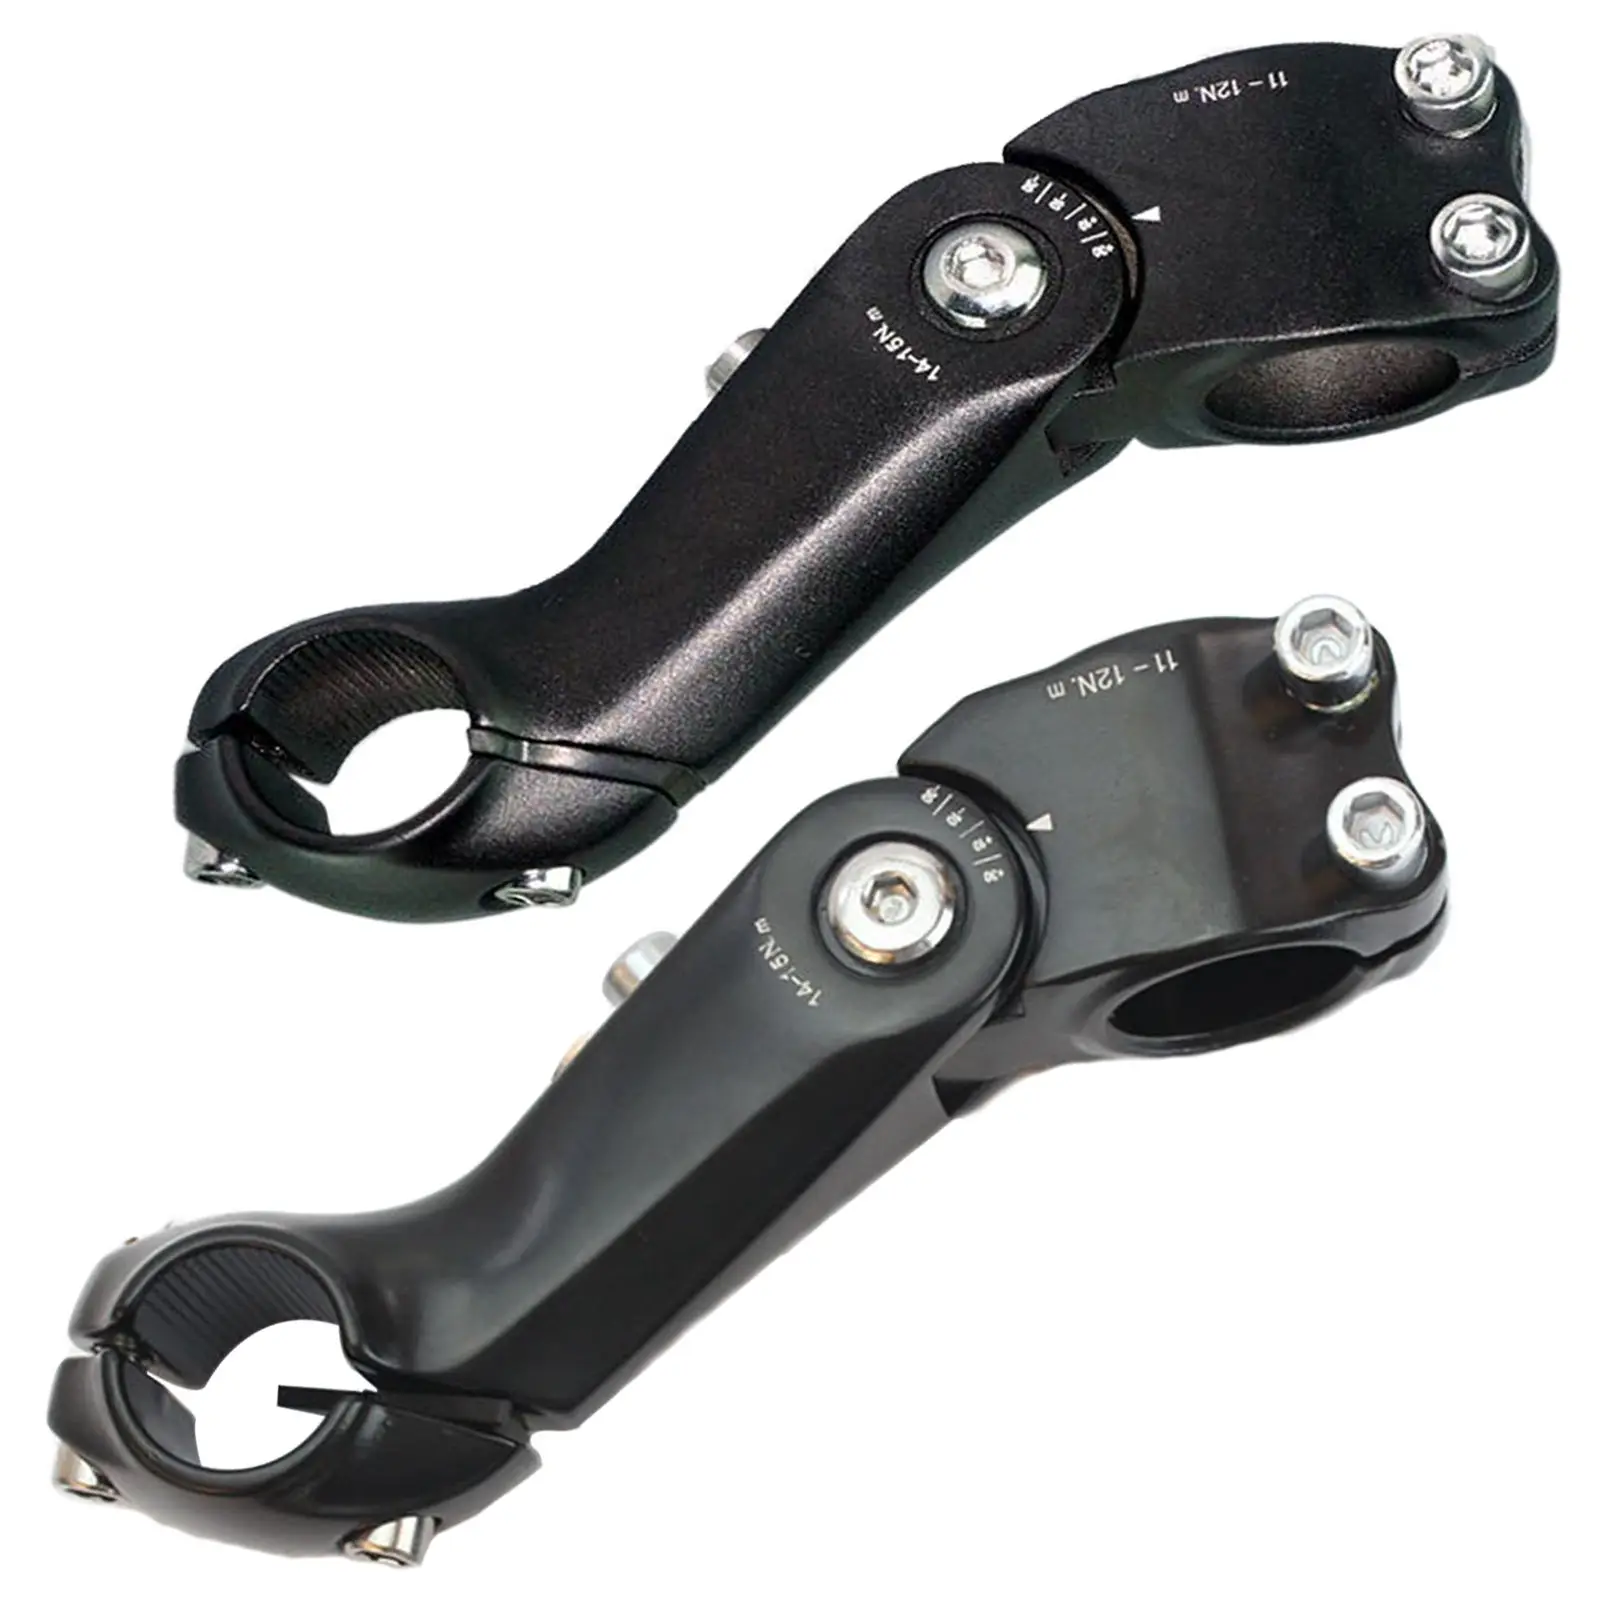 25.4mm Adjustable Stem MTB Adjustable Bike Stem for 25.4mm(1``) Handlebars, Suitable for Most of Mountain Bike, Road Bike